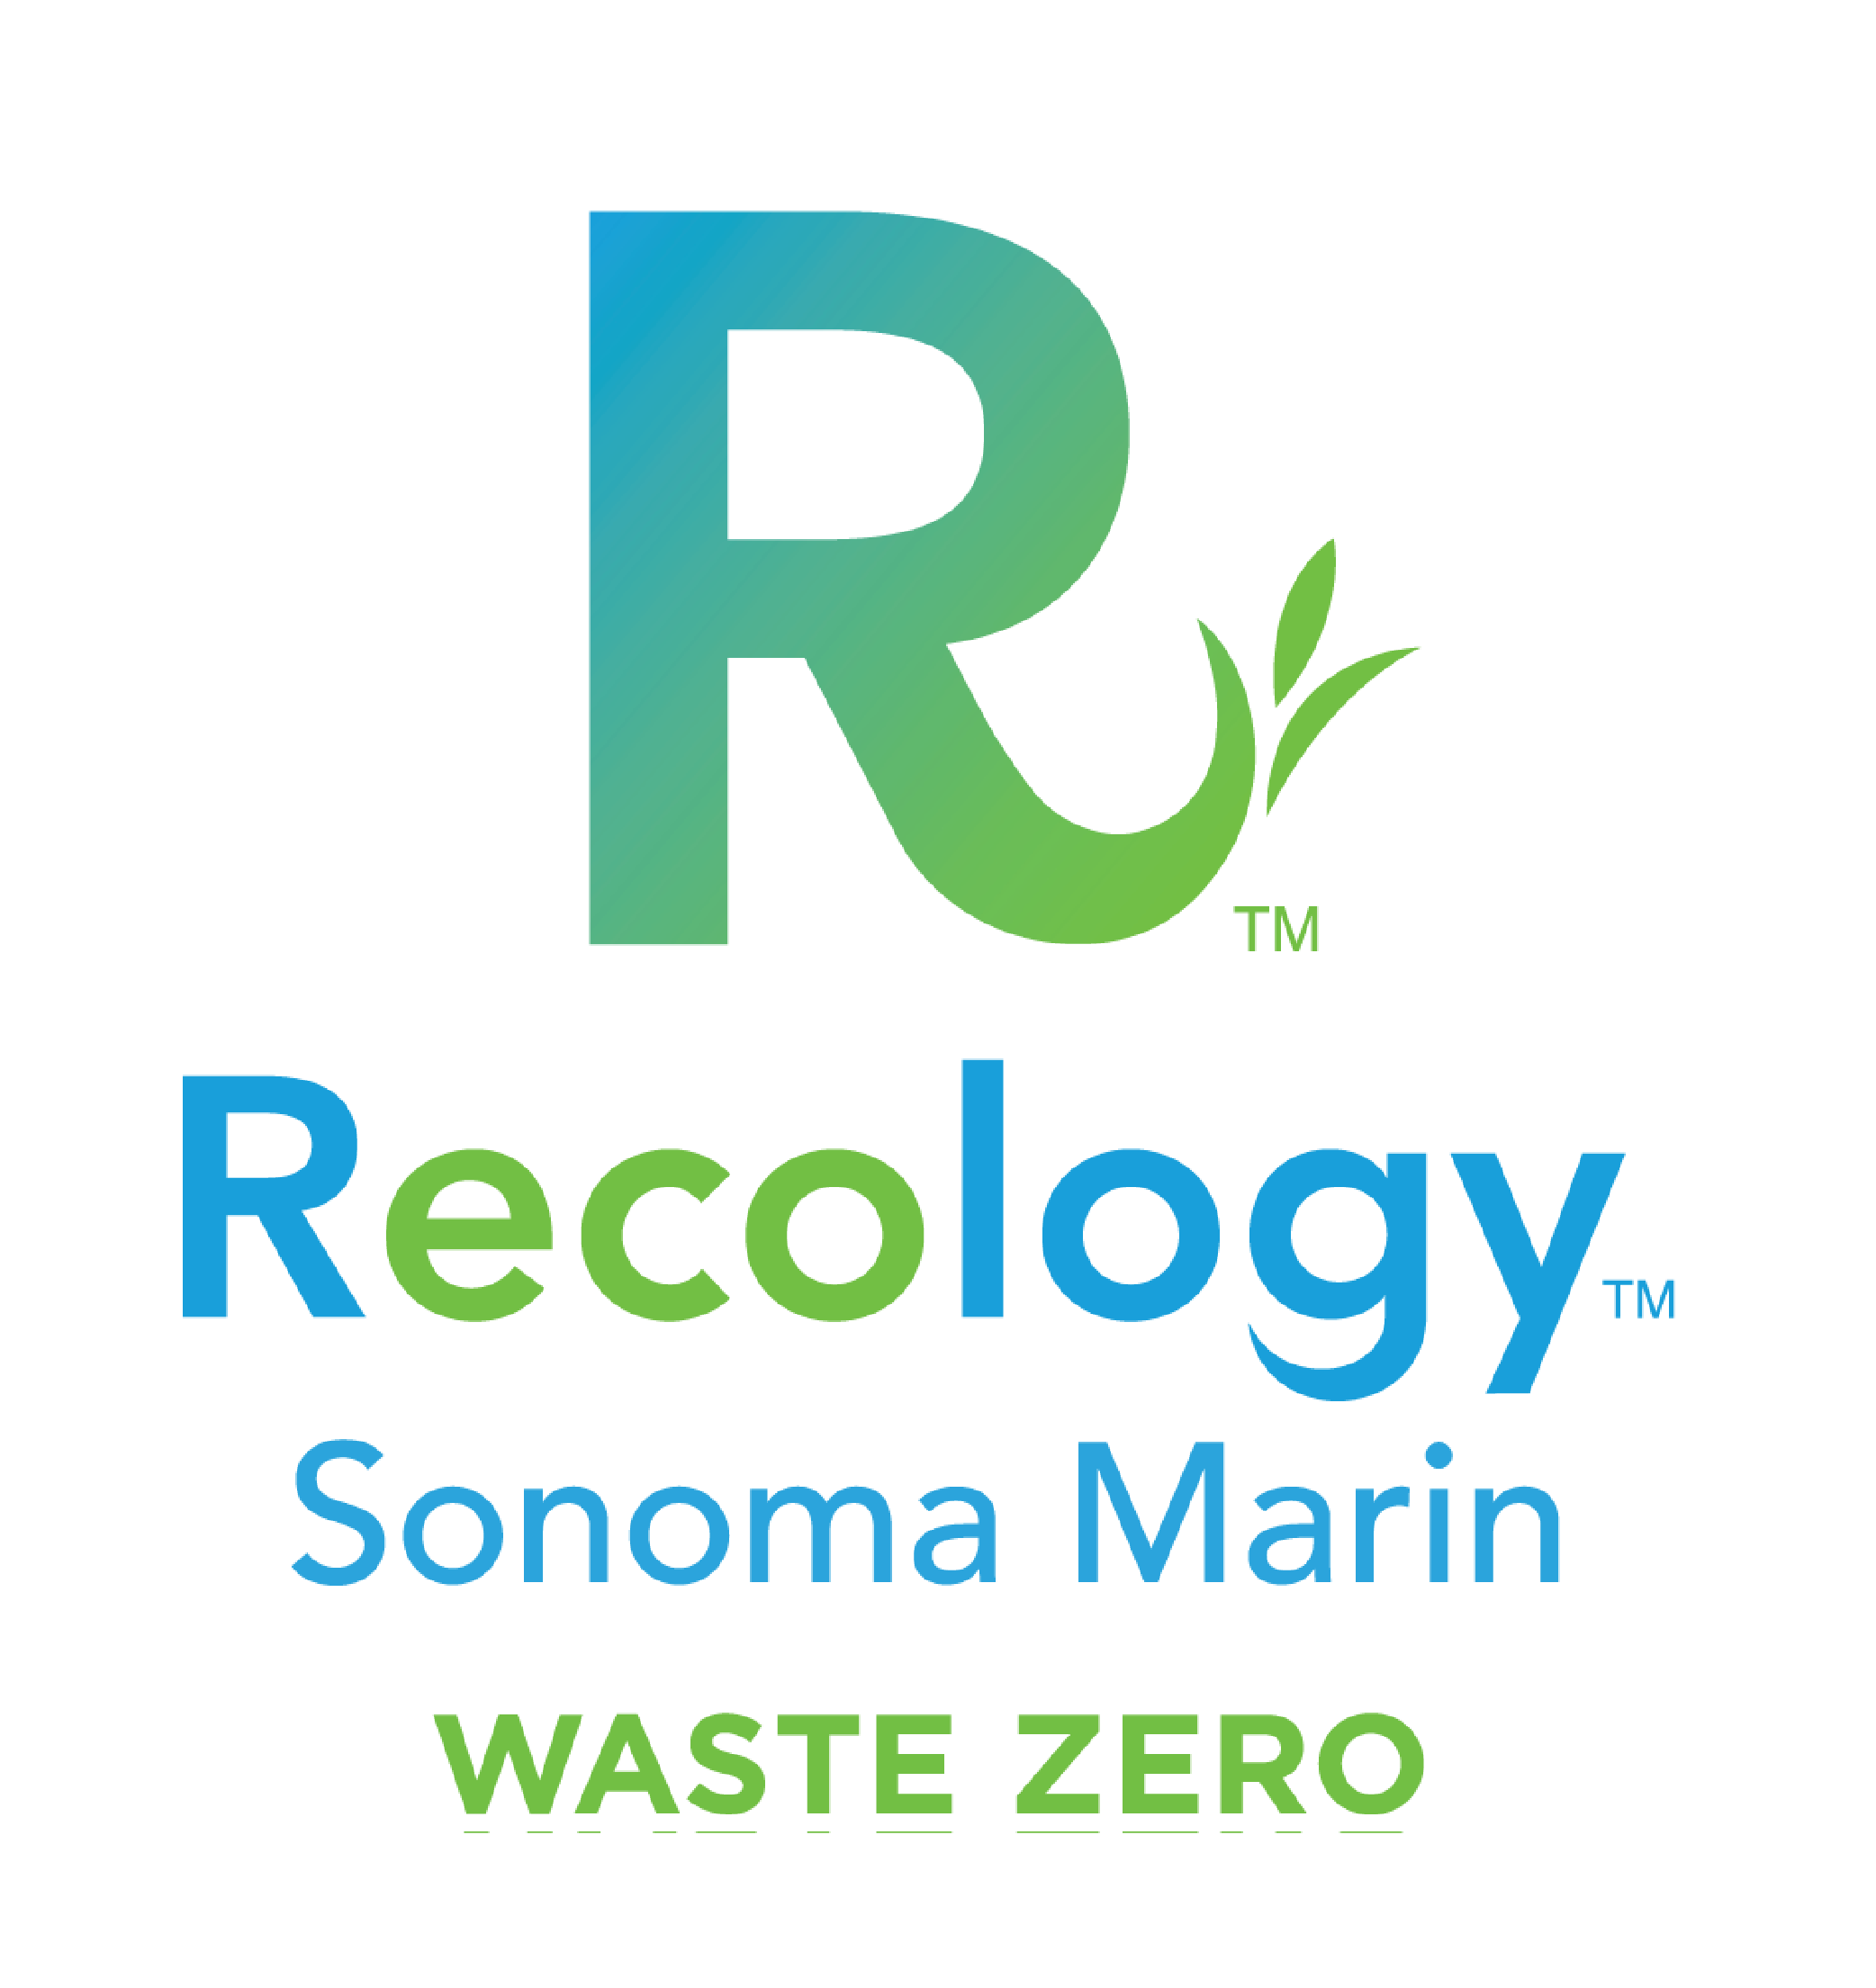 Recology Sonoma Marin Waste Zero